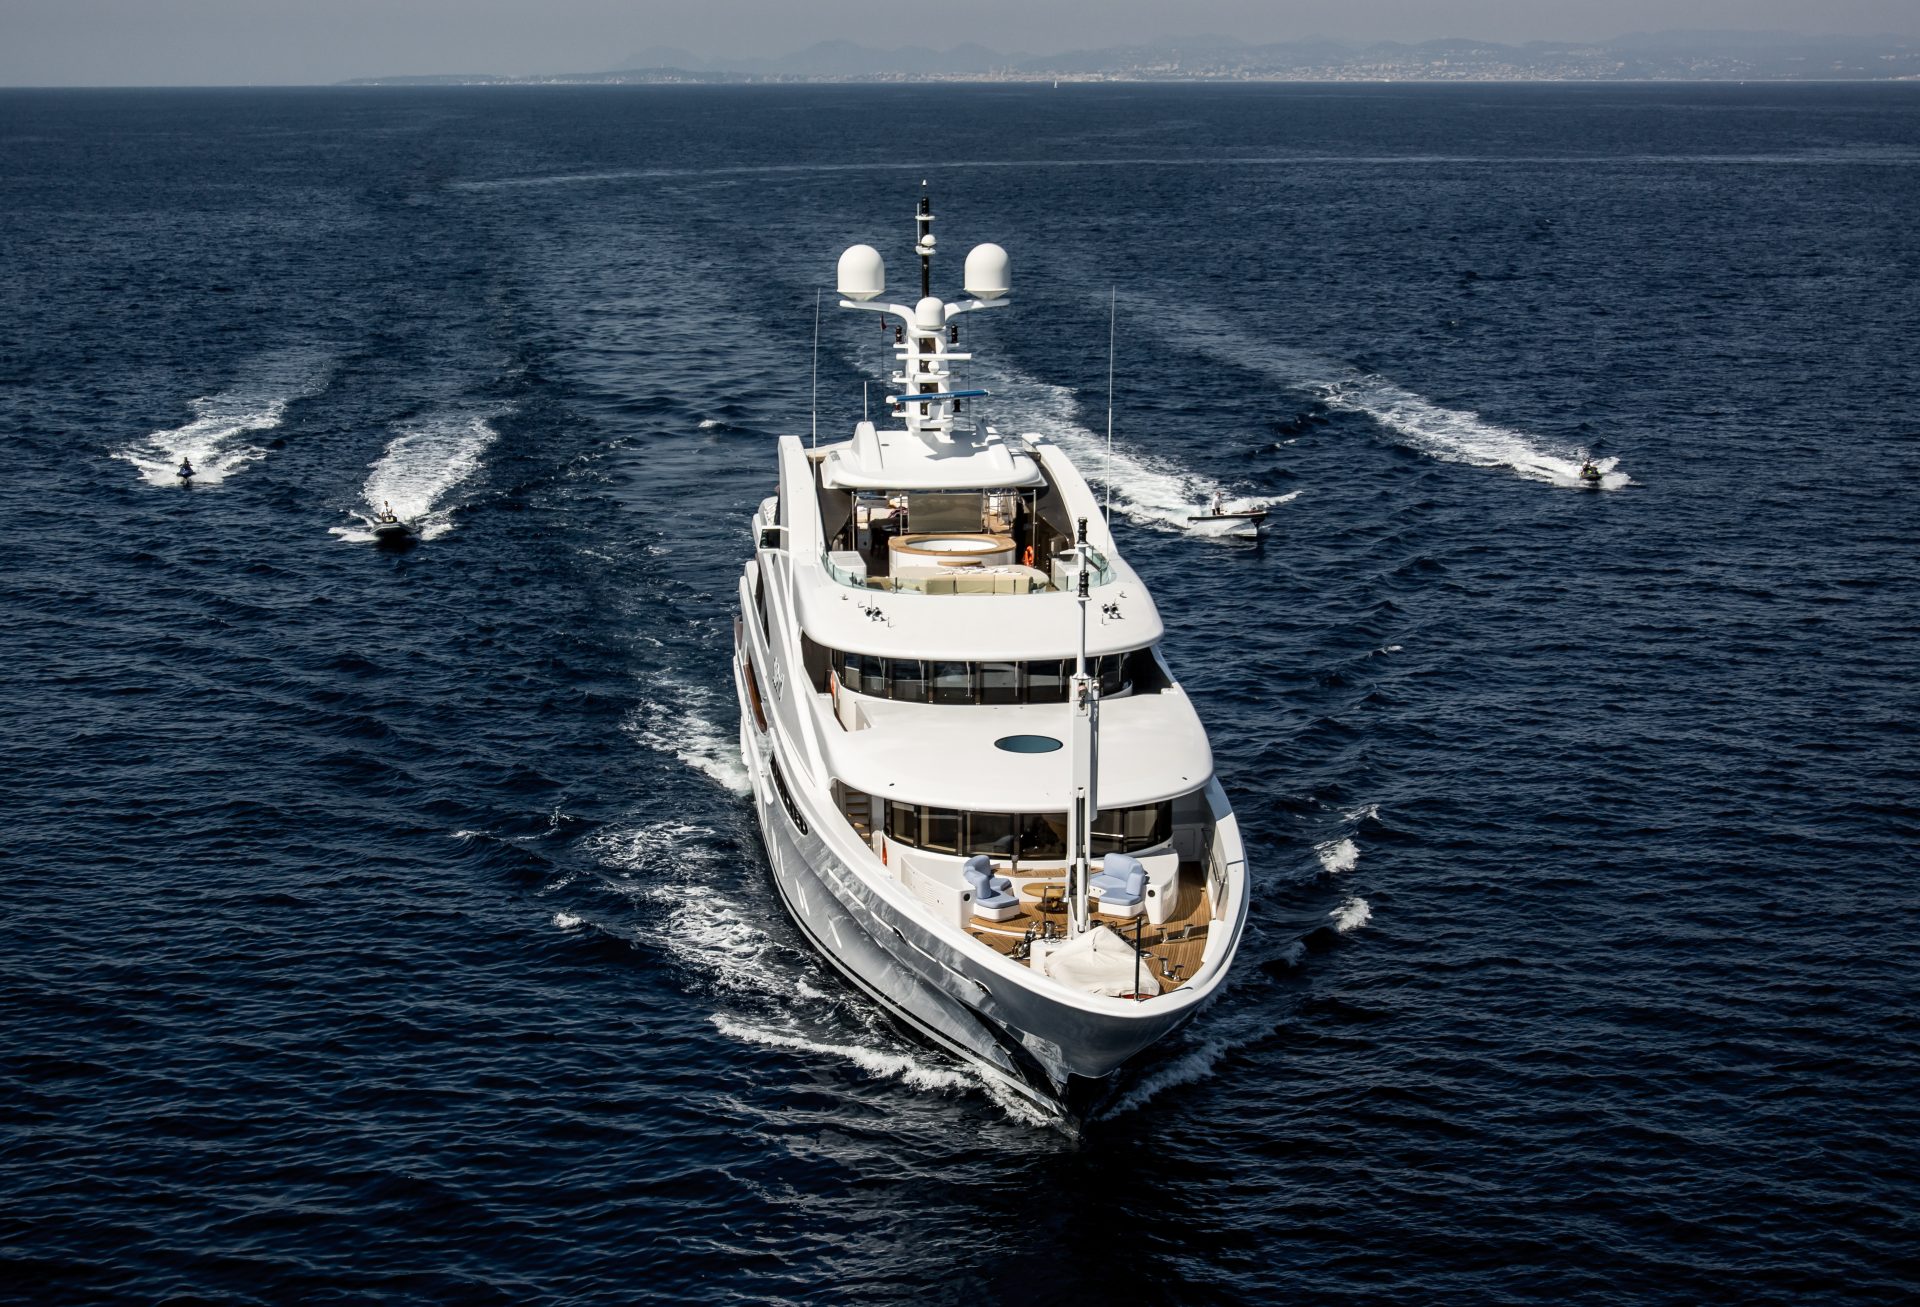 yacht charter amalfi